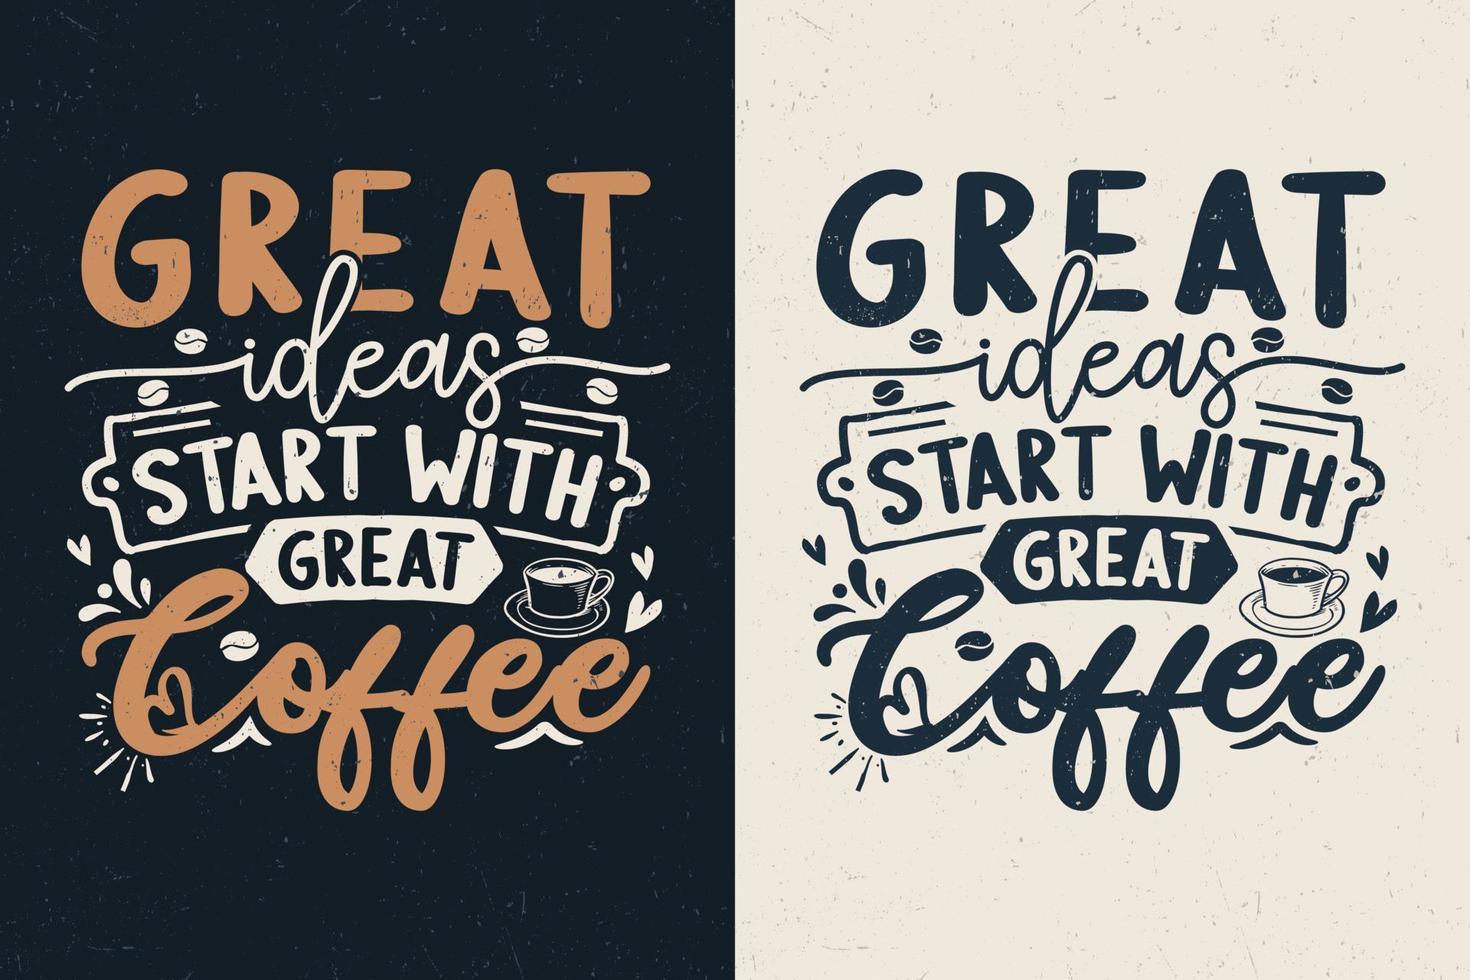 geweldige ideeën beginnen met geweldig koffietypografieontwerp vector